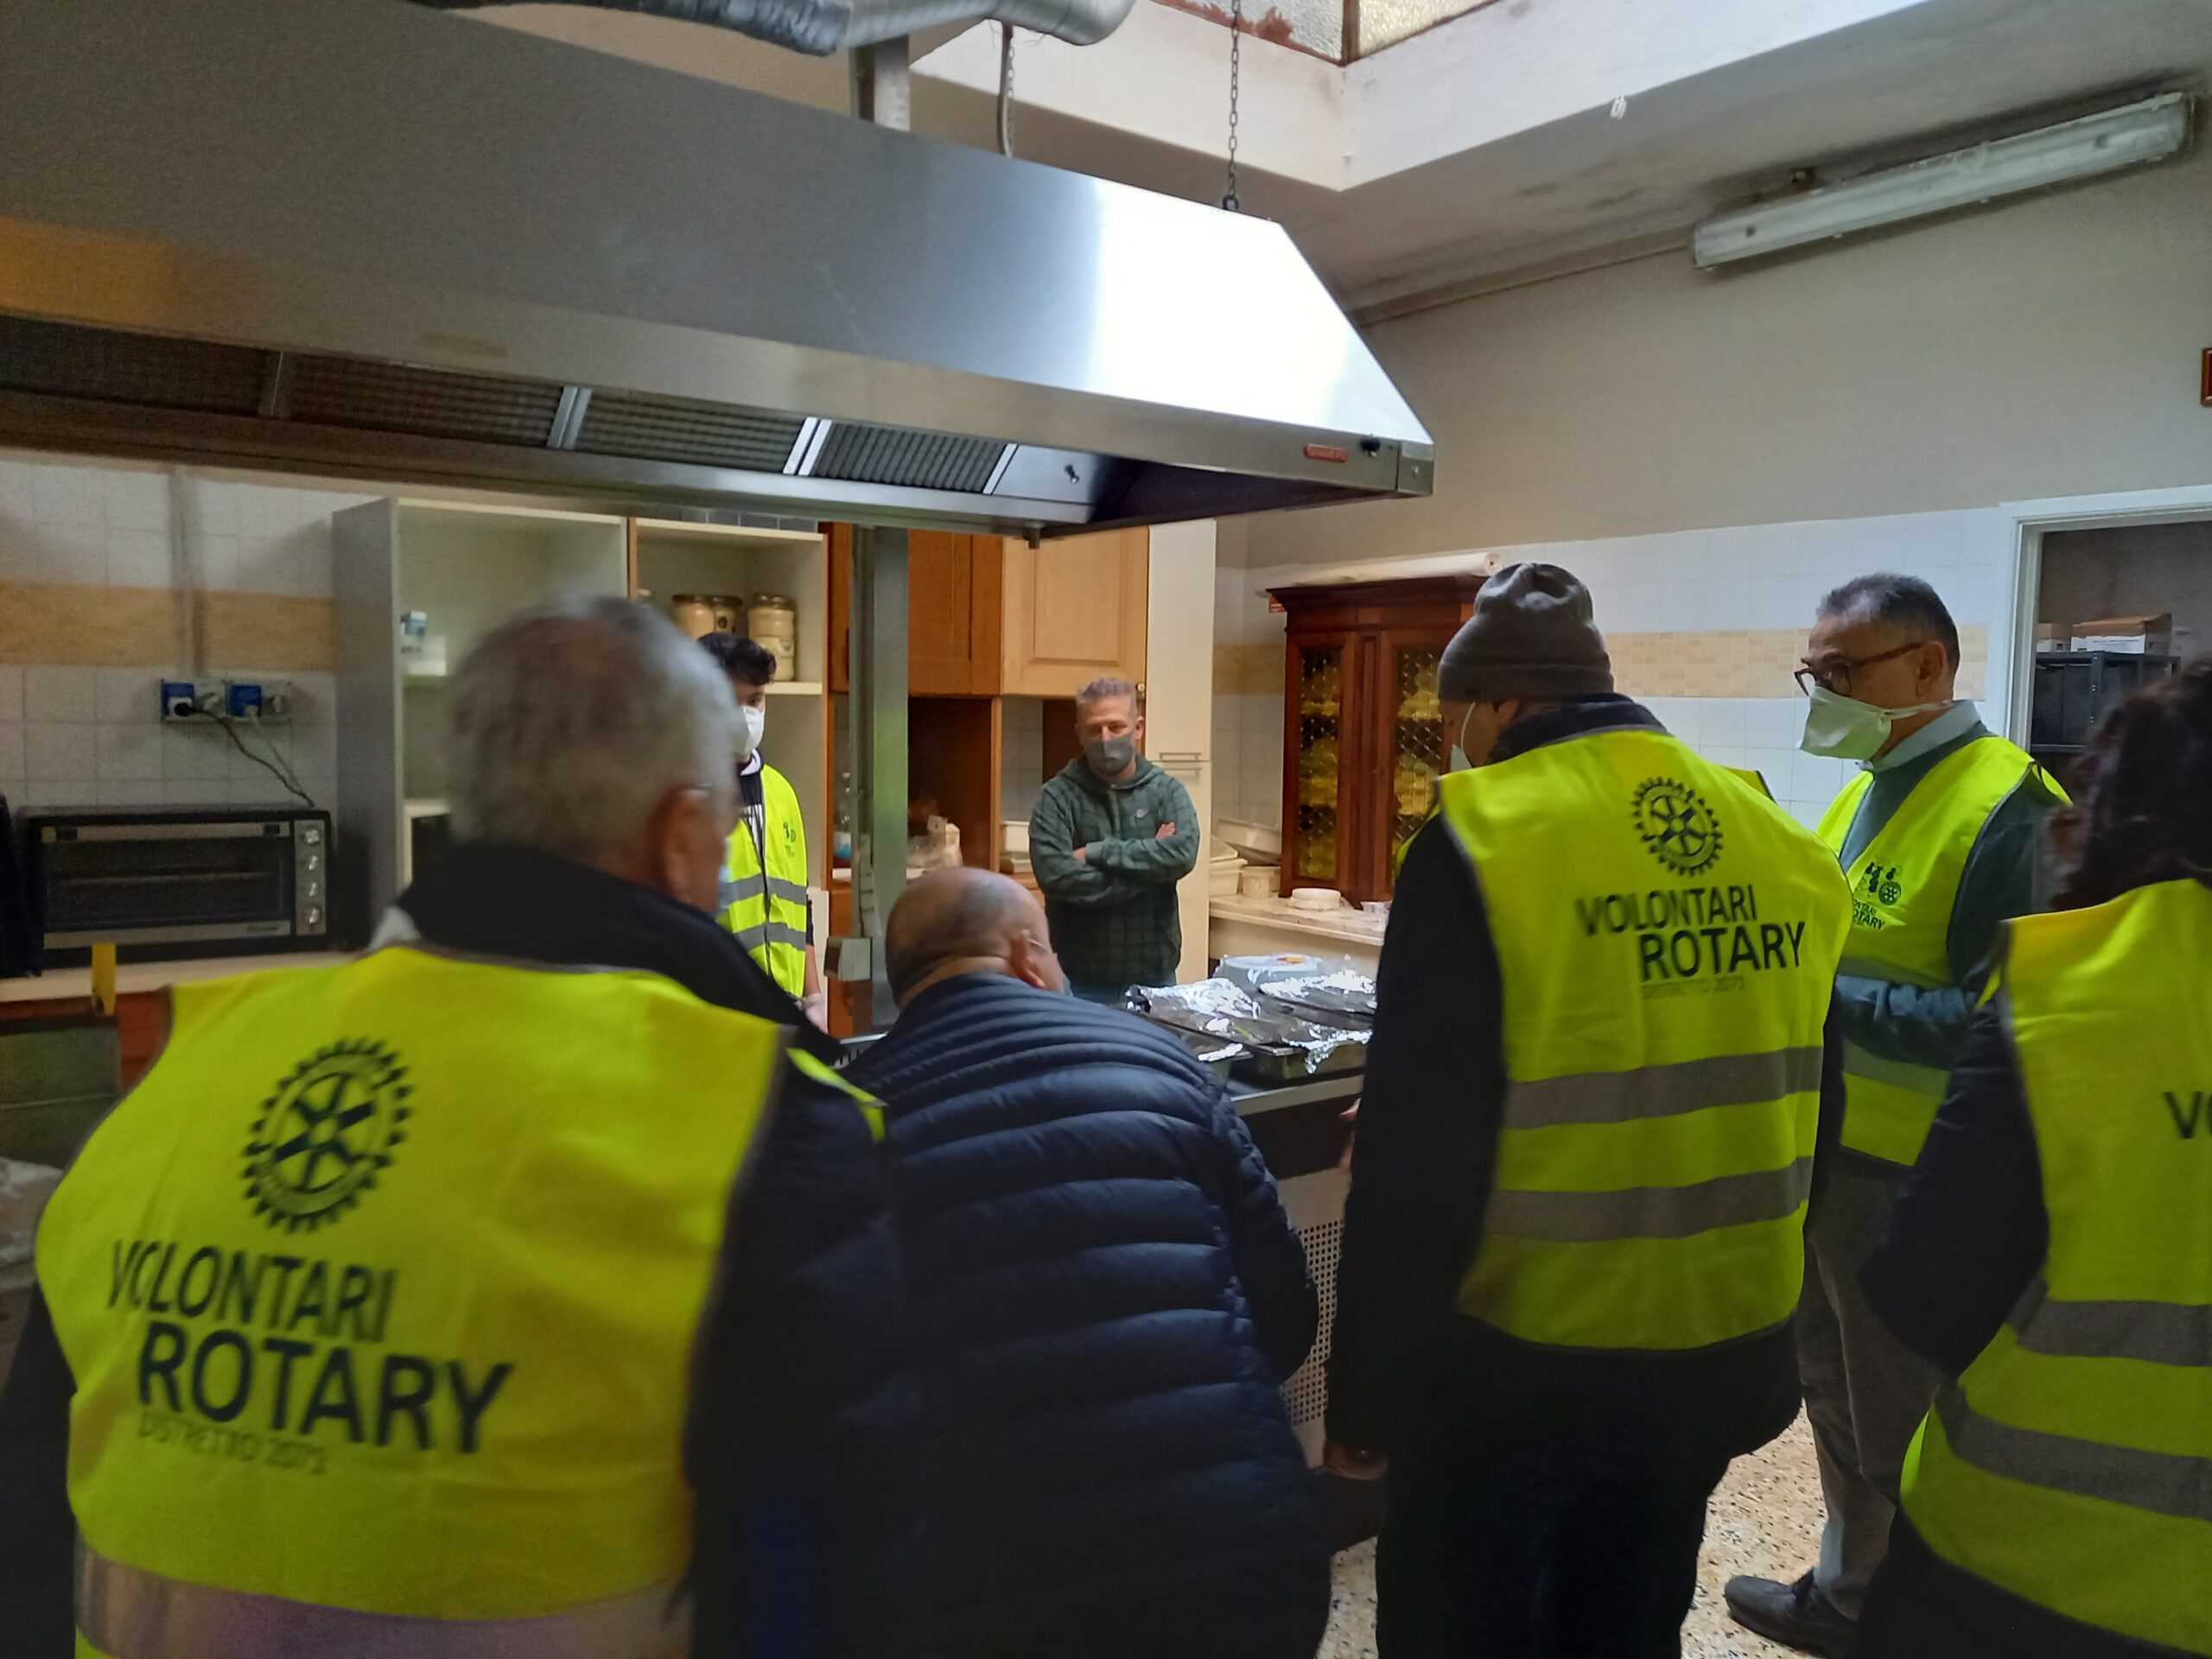 Dal Rotary Club Arezzo cena solidale per i bisognosi della mensa Caritas